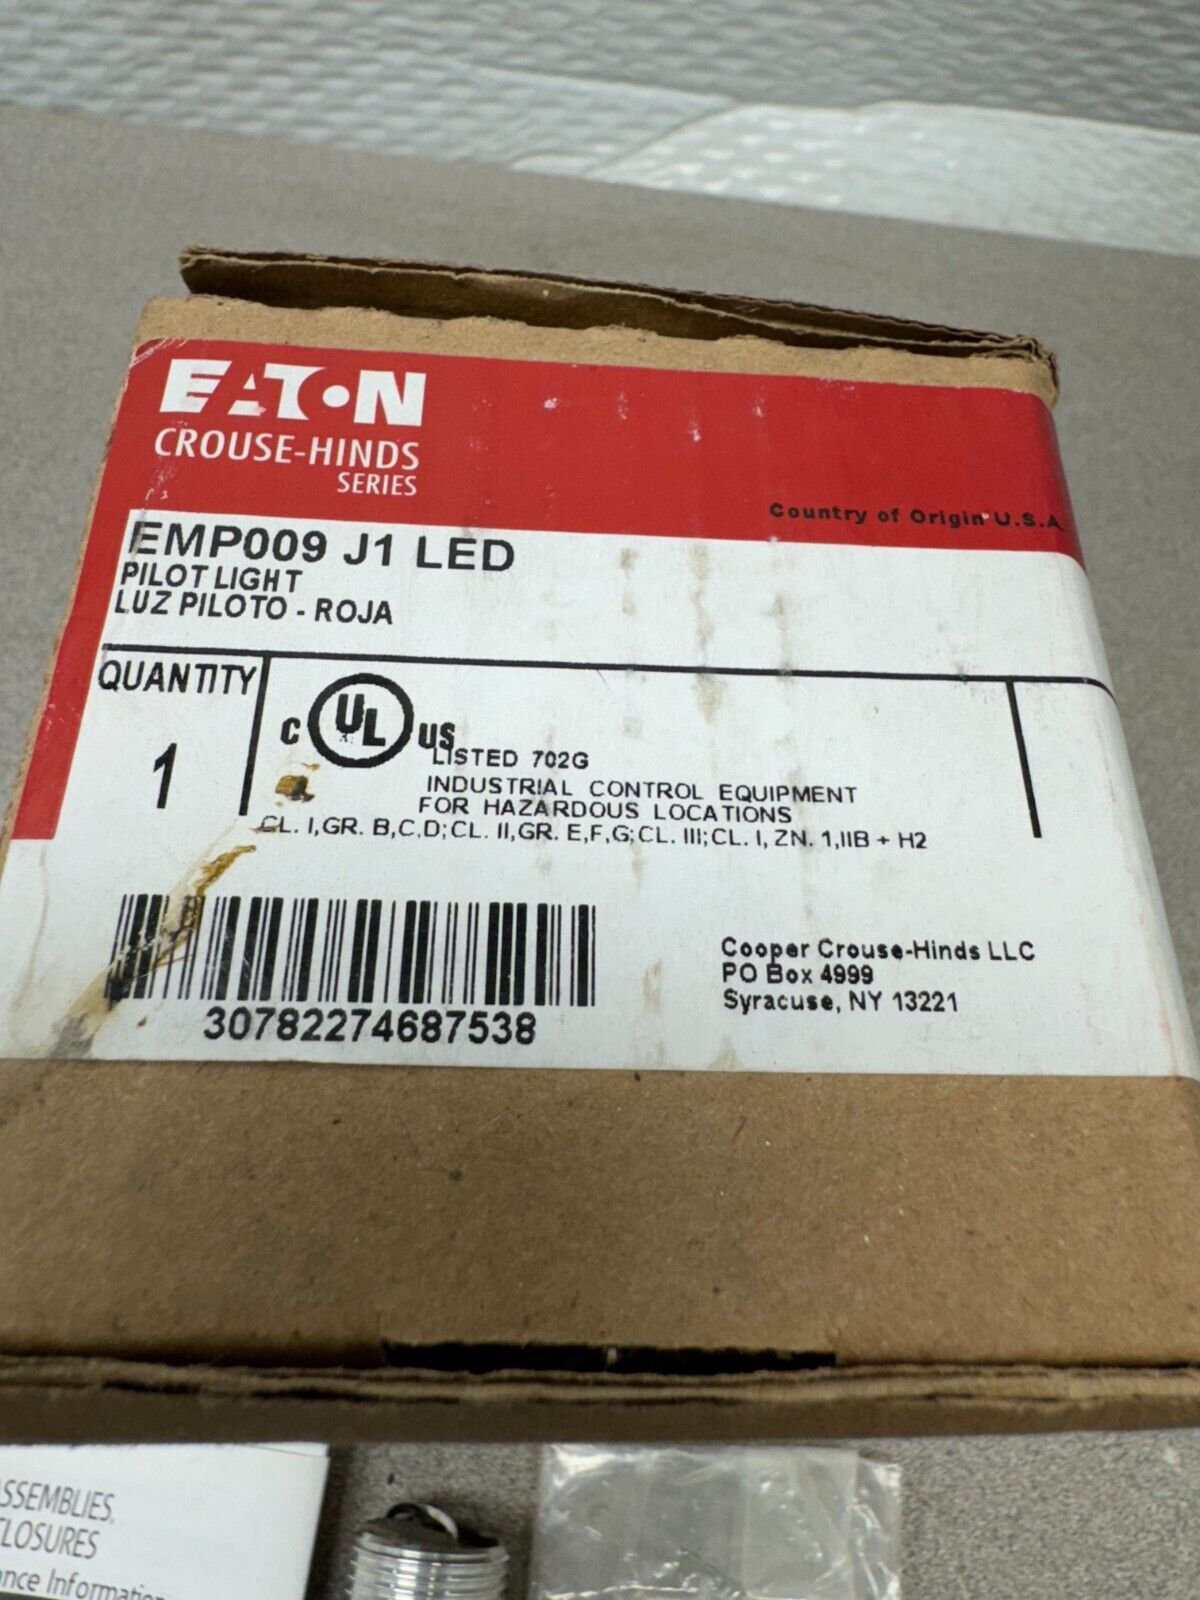 NEW IN BOX EATON PILOT LIGHT EMP009 J1 LED